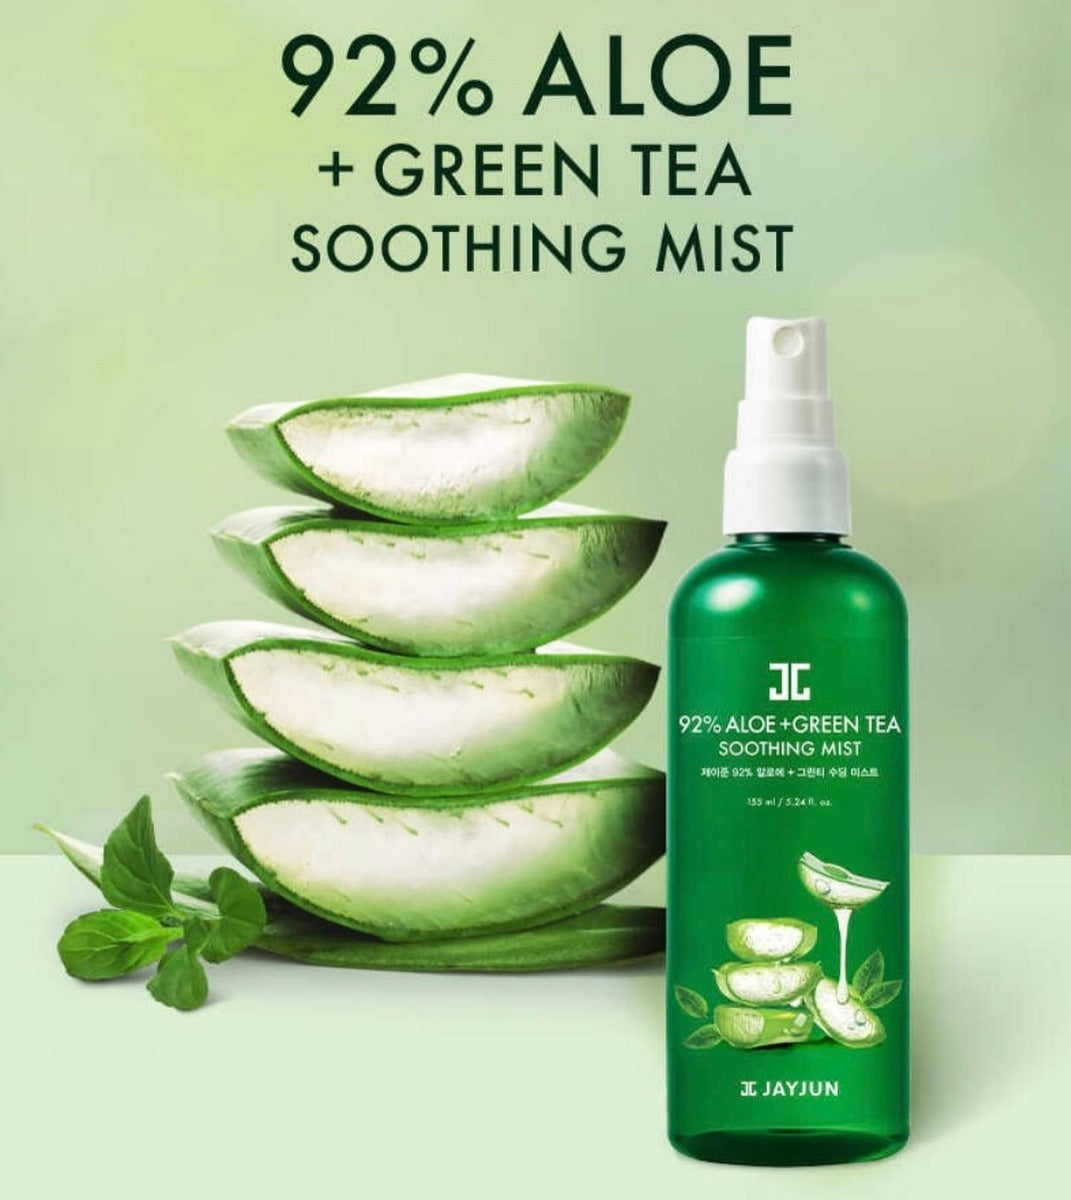 JAYJUN 92% Aloe and Green Tea Soothing Mist (155 ml)